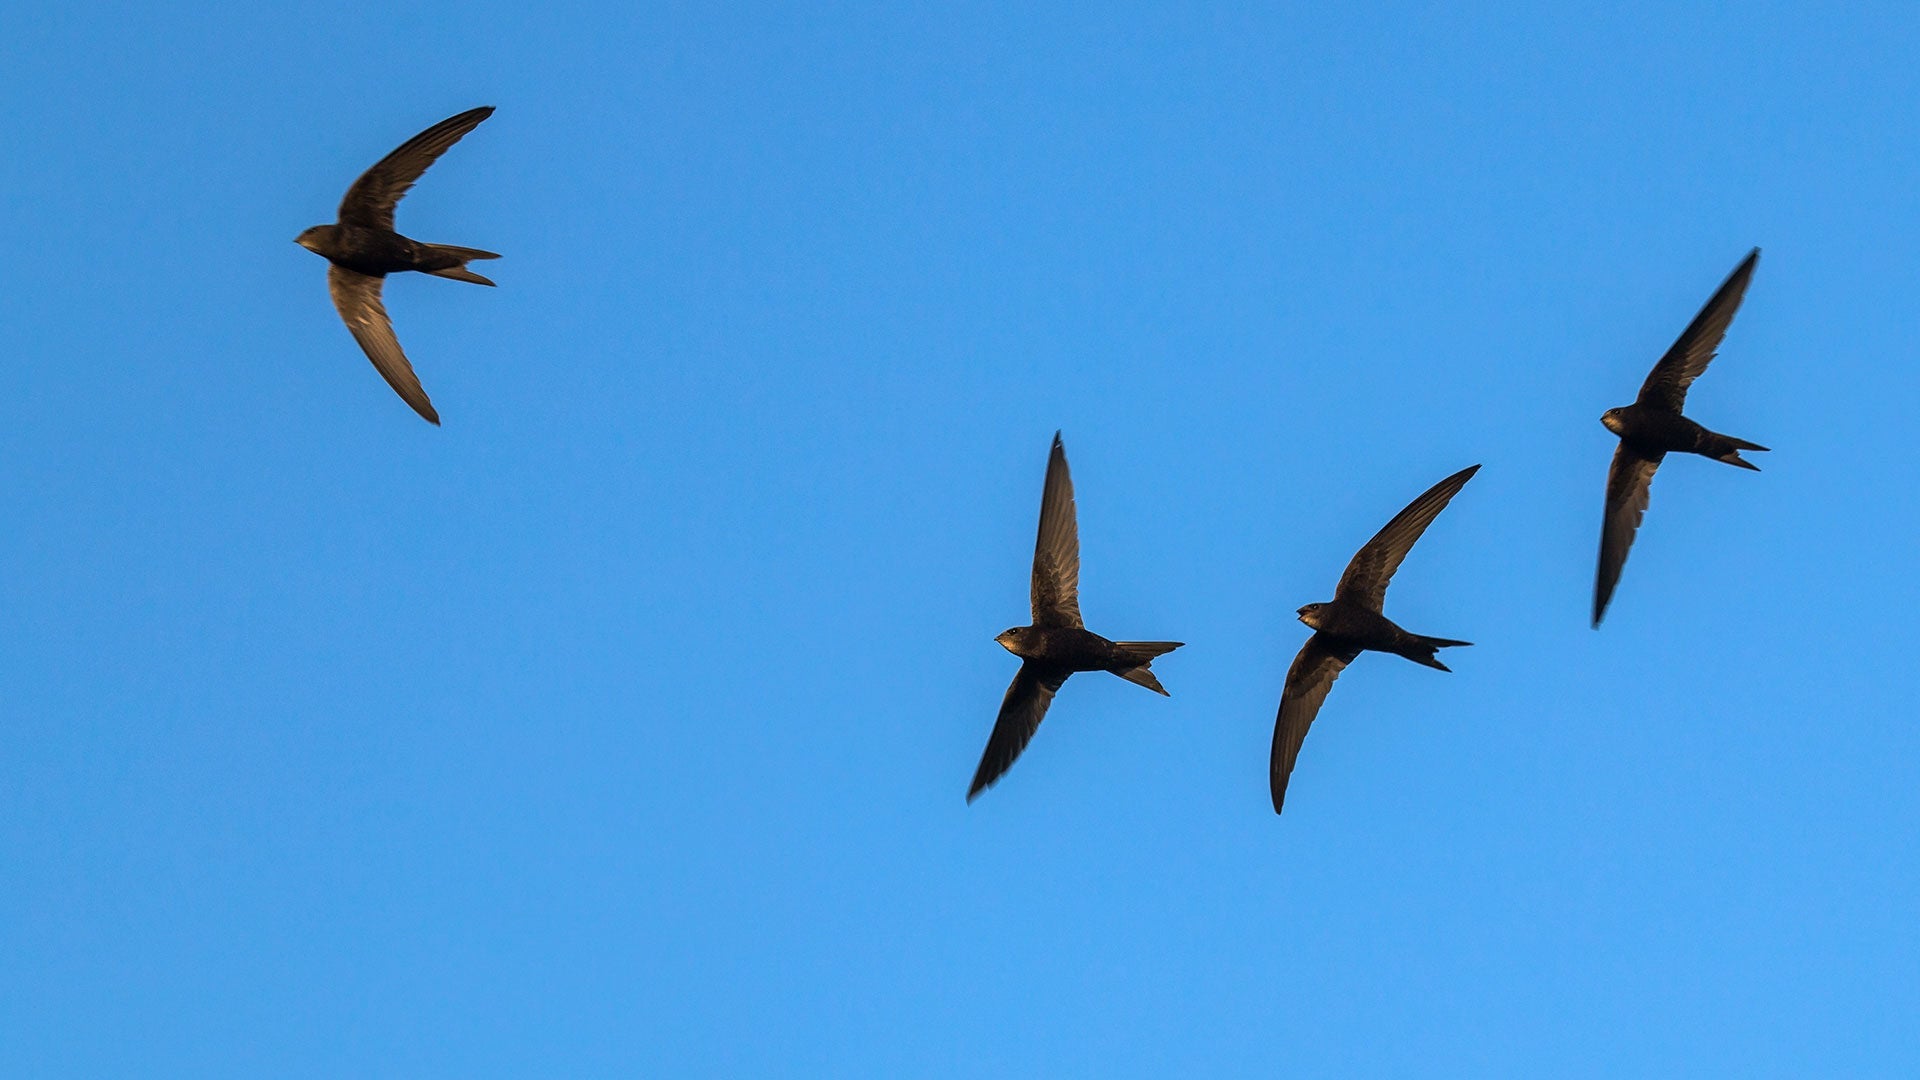 Swift in flight in blue sky